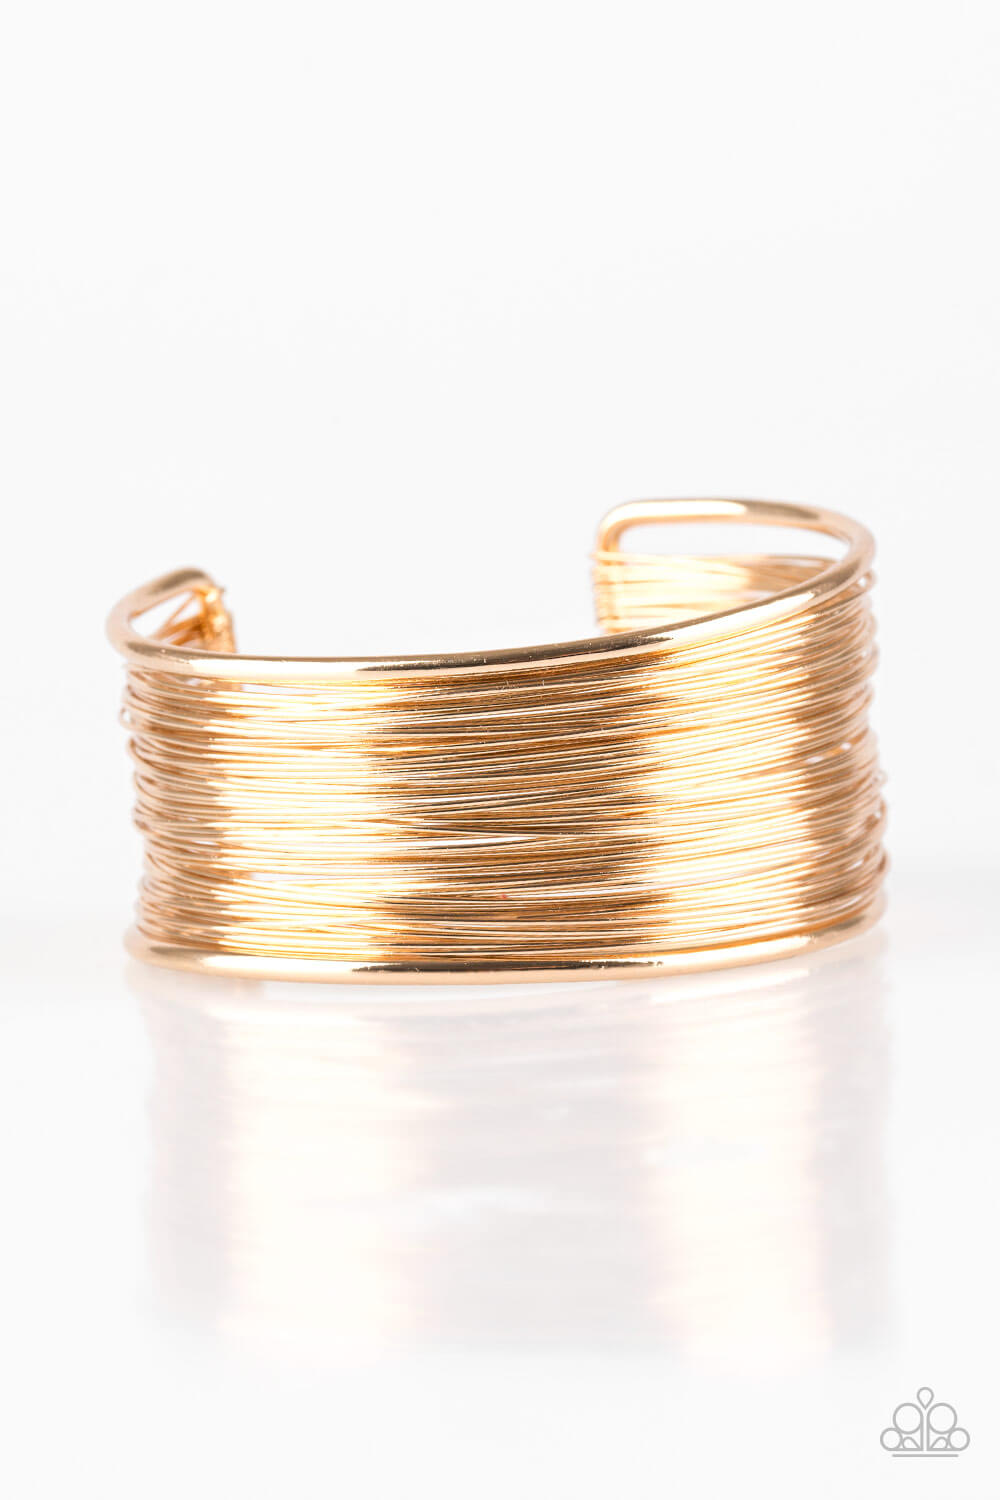 Wire Warrior - Gold Cuff Bracelet - Princess Glam Shop